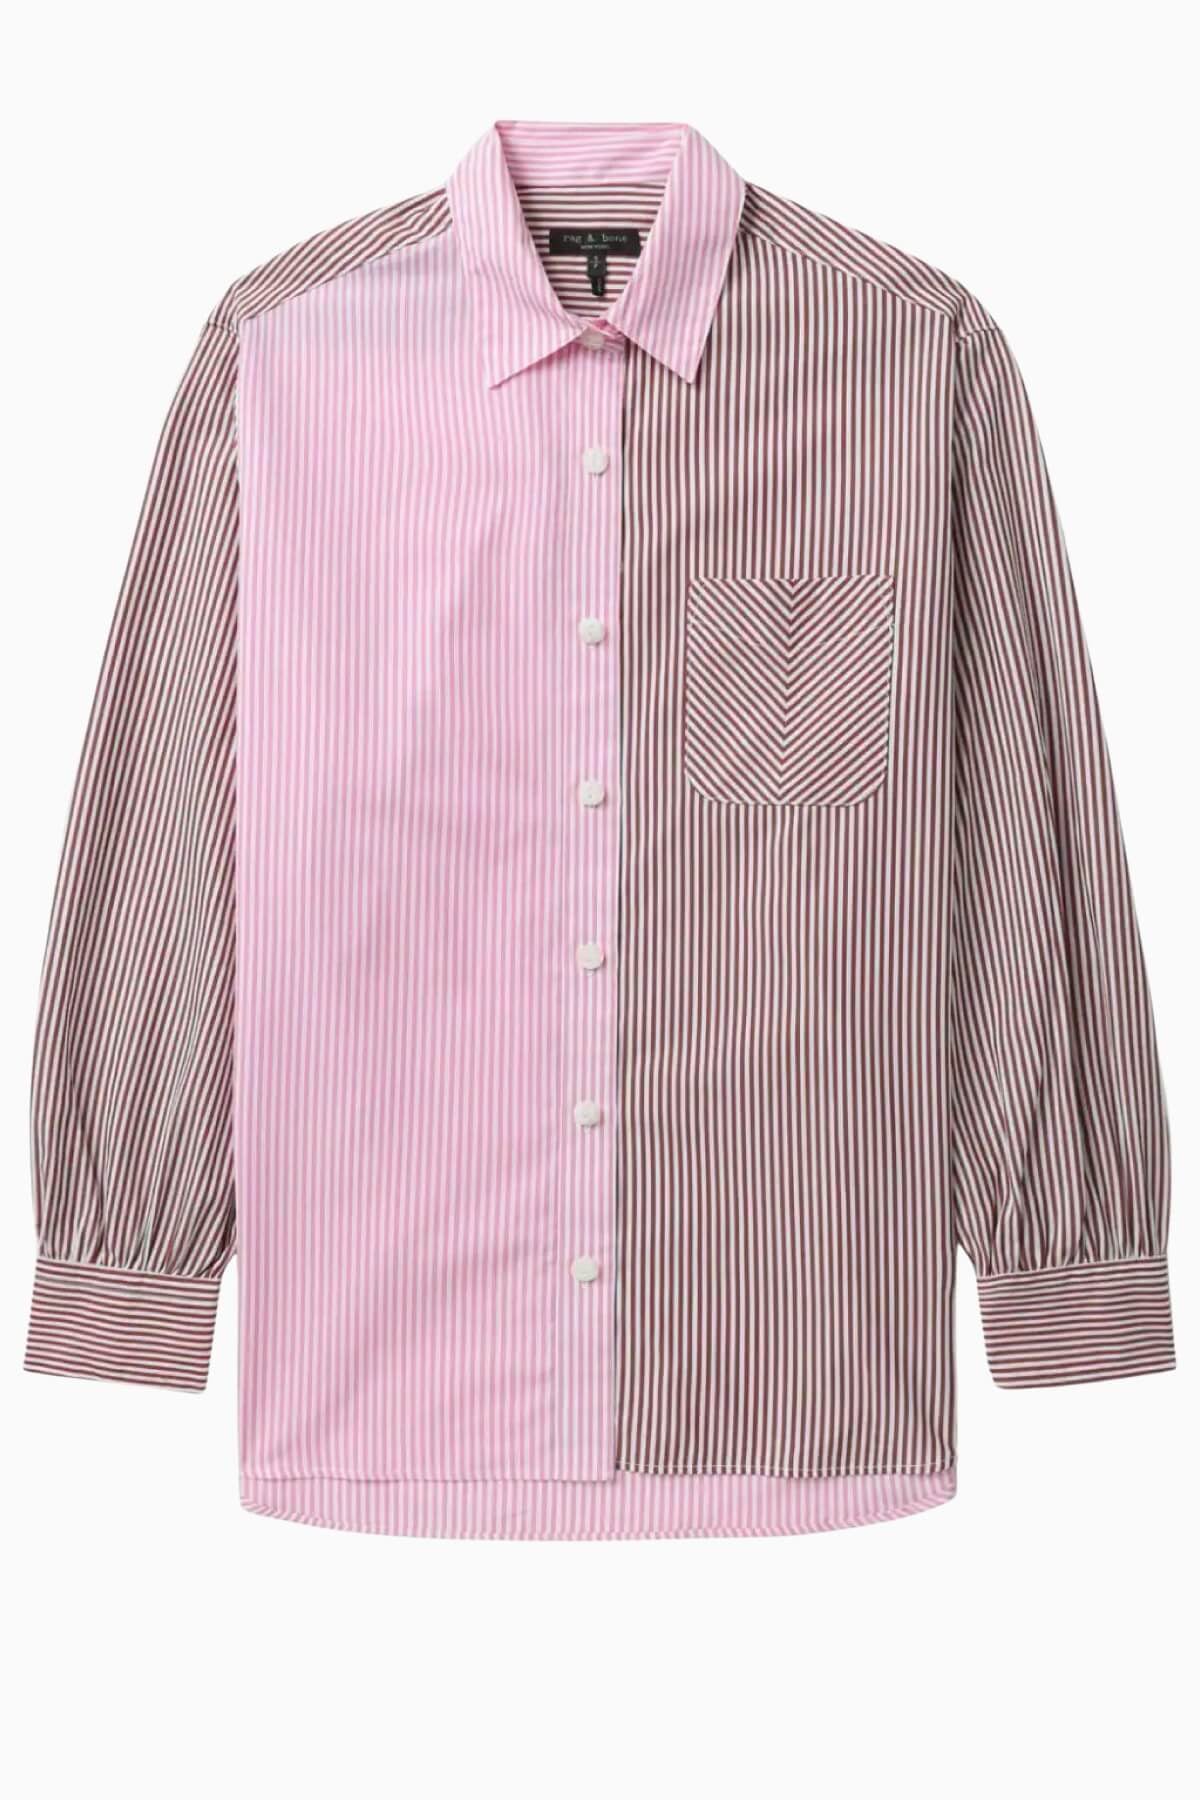 Rag & Bone Maxine Shirt - Pink Multi